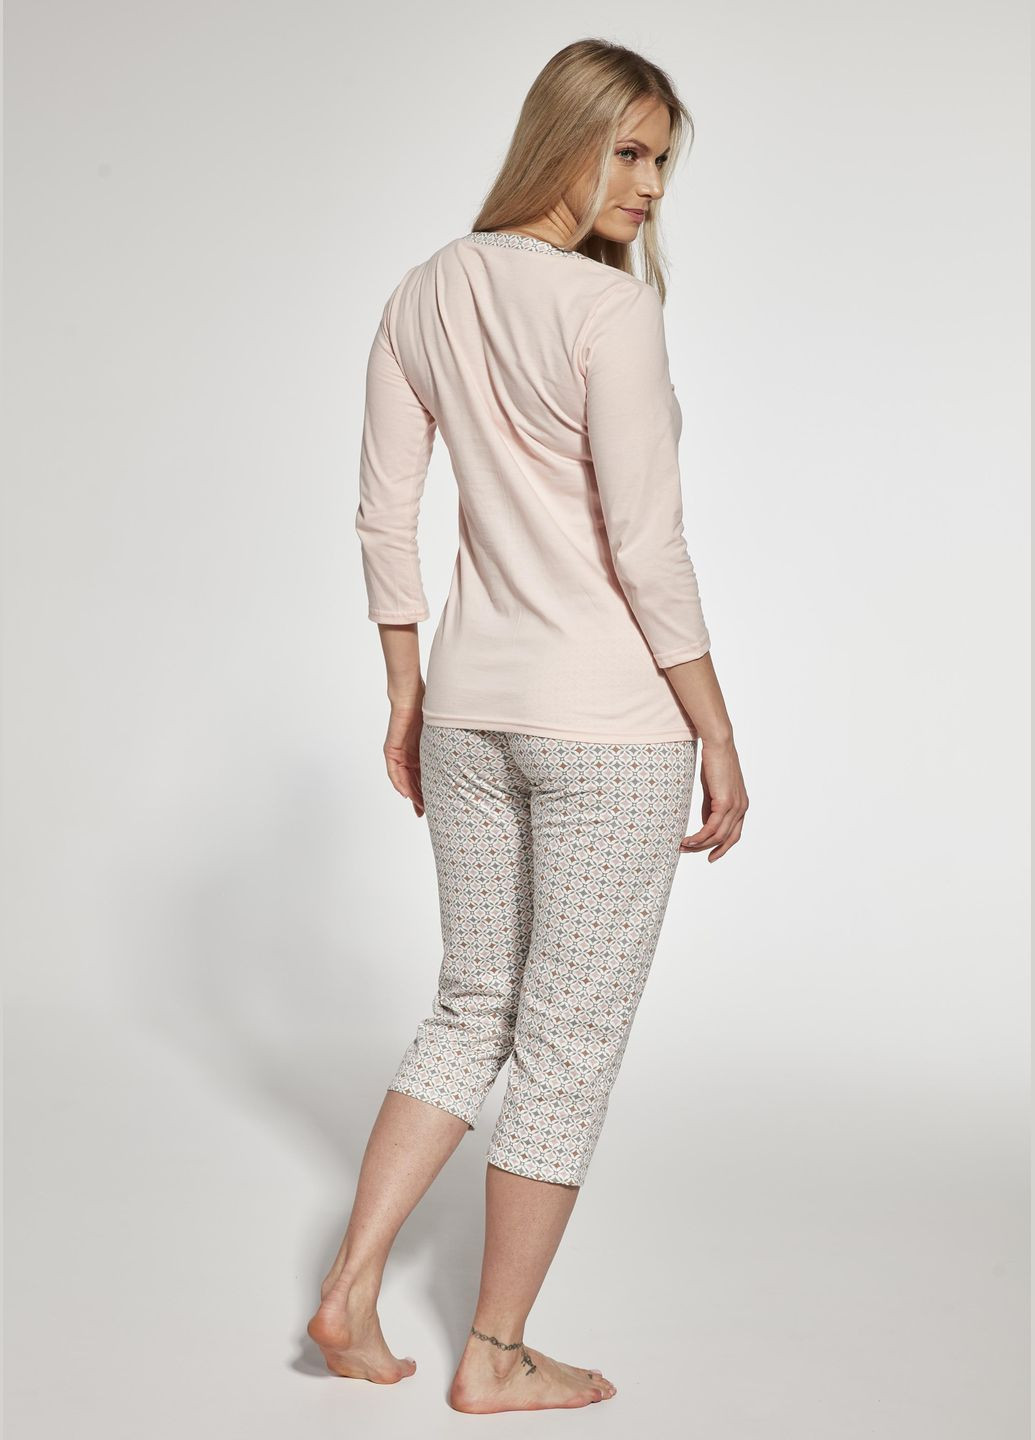 Комбинированная всесезон пижама женская 358 cindy xxl рожево-бежевий 766-23 футболка + капри Cornette